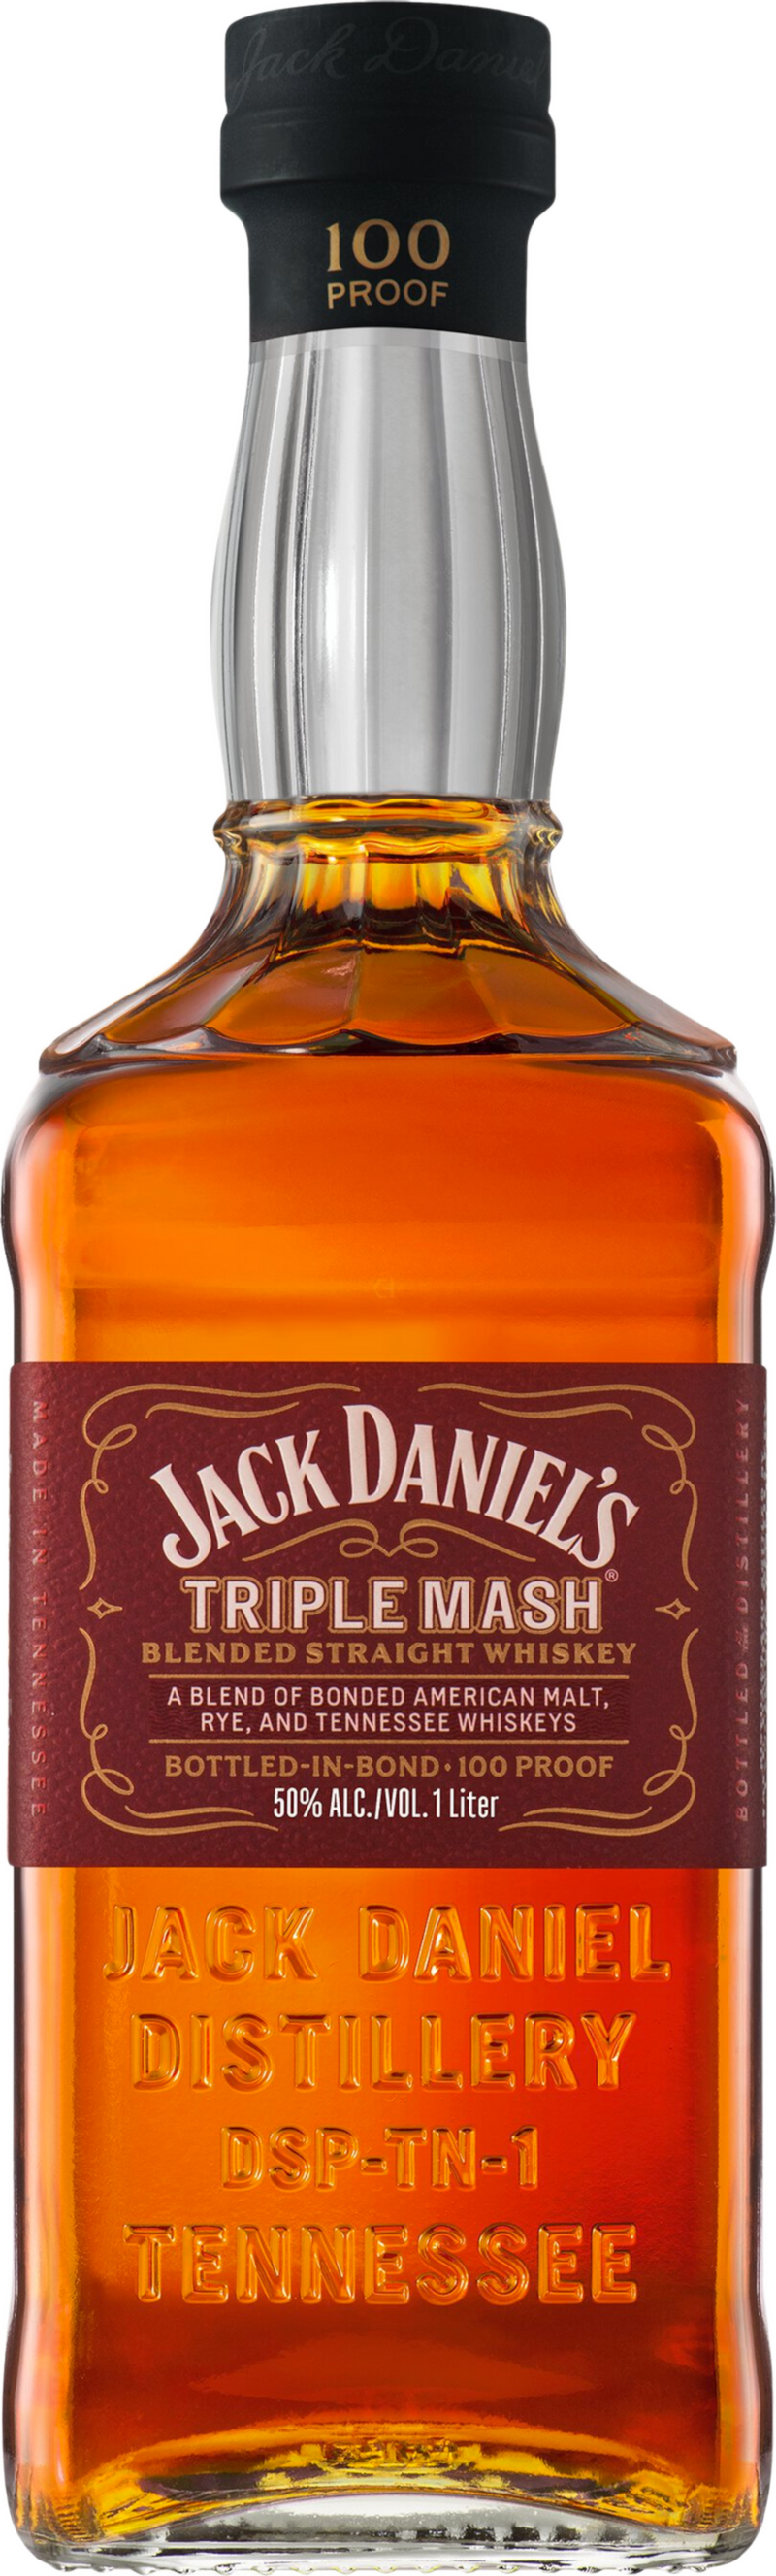 Jack Daniel's Triple Mash Blended Whiskey 100 Proof 750ml